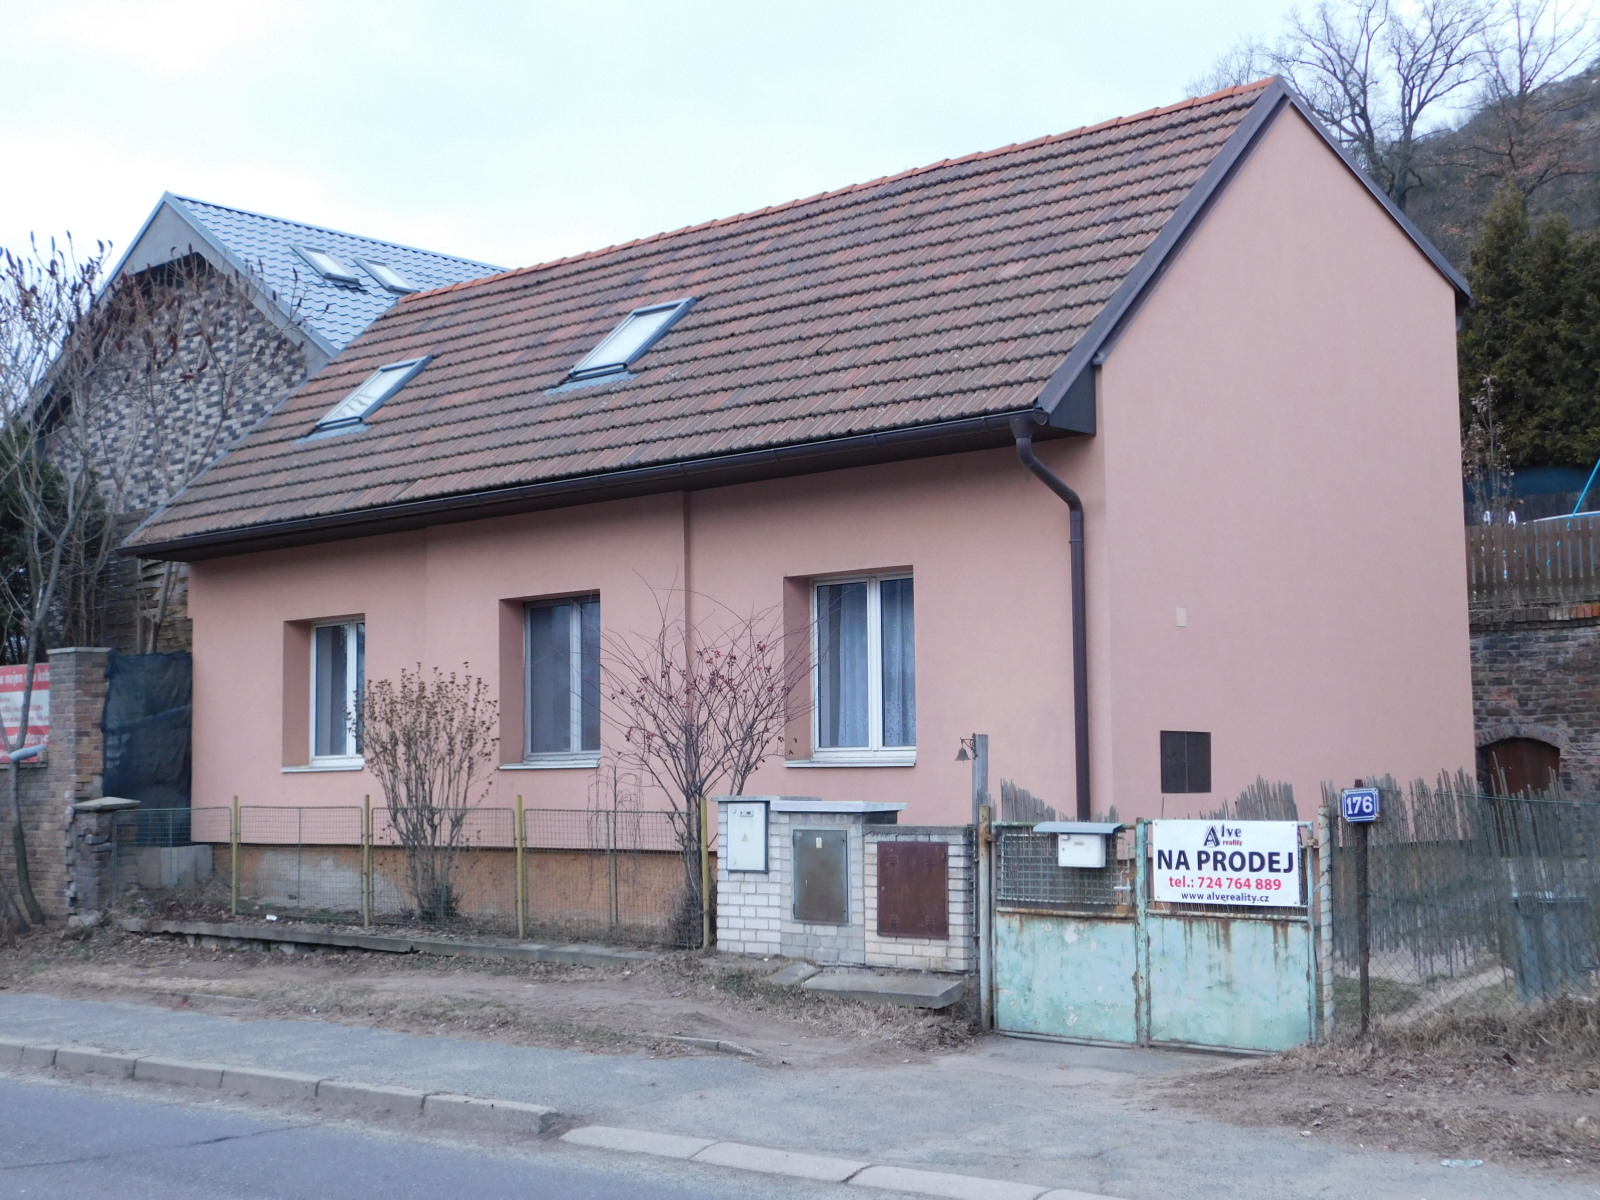 Prodej rodinného domu 5+1 v Kralupech nad Vltavou - Mikovice, okr. Mělník - rodinný dům, vila